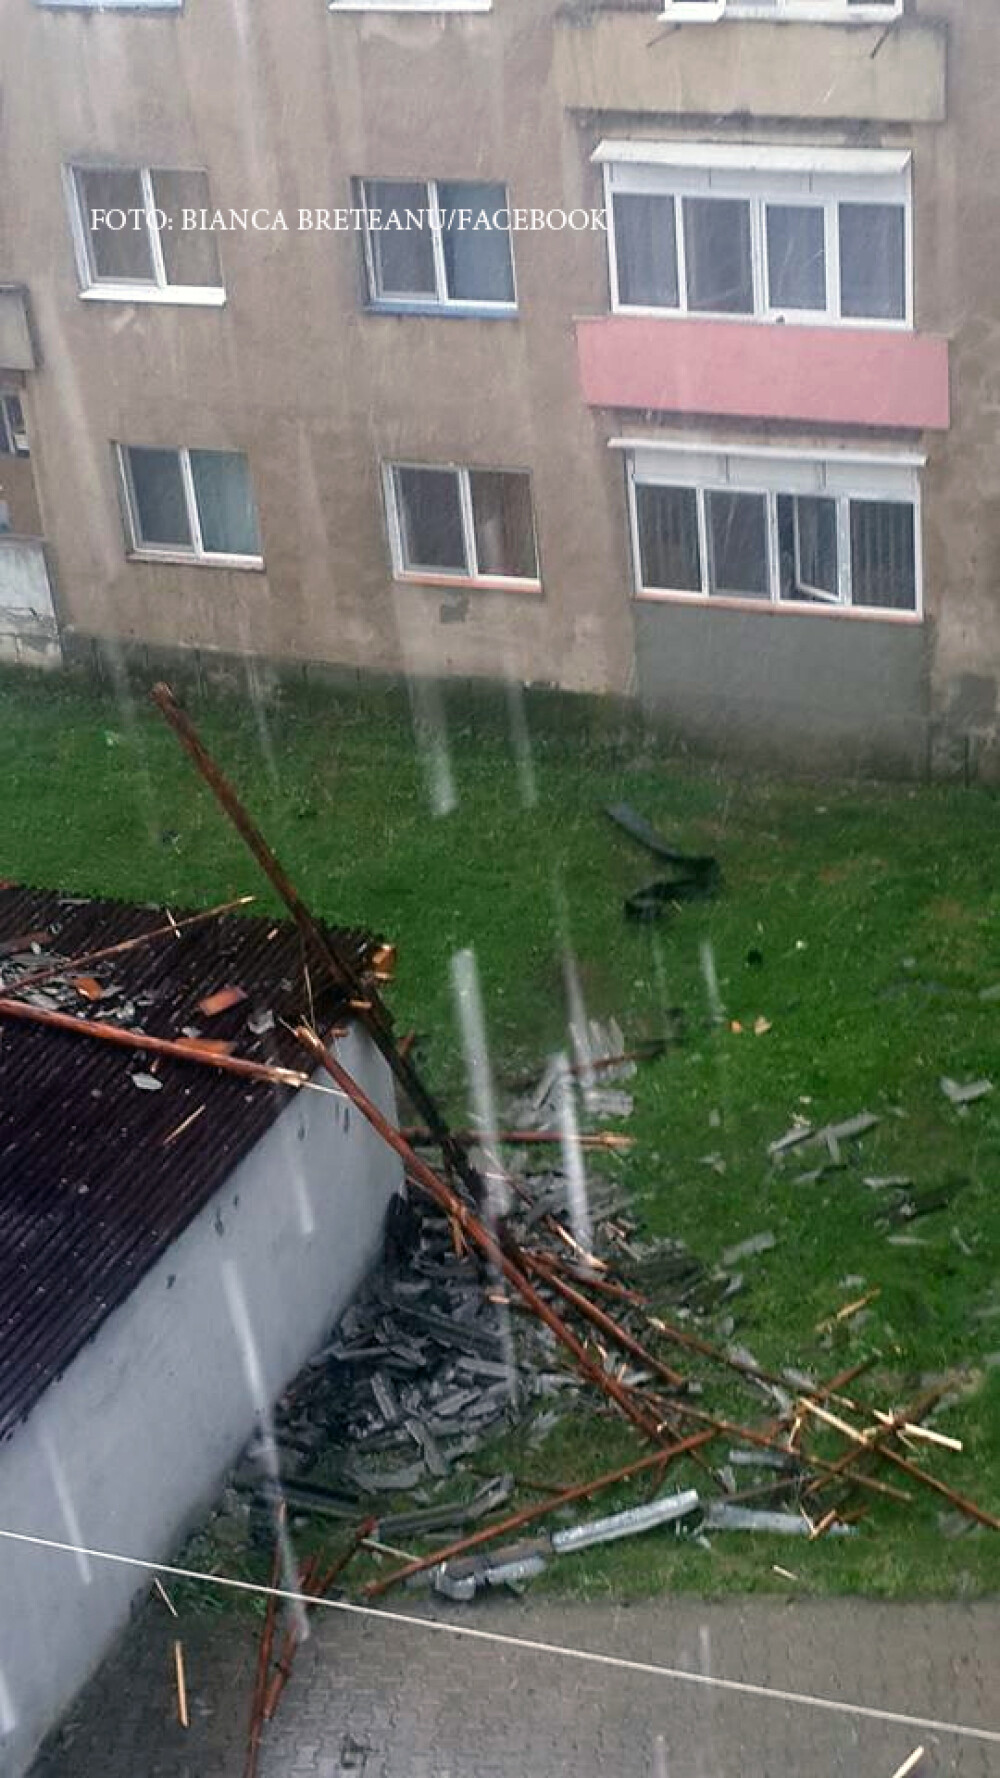 Imagini de groaza, filmate in orasul Hateg. O furtuna a smuls acoperisurile de pe blocuri si copacii din radacini - Imaginea 7